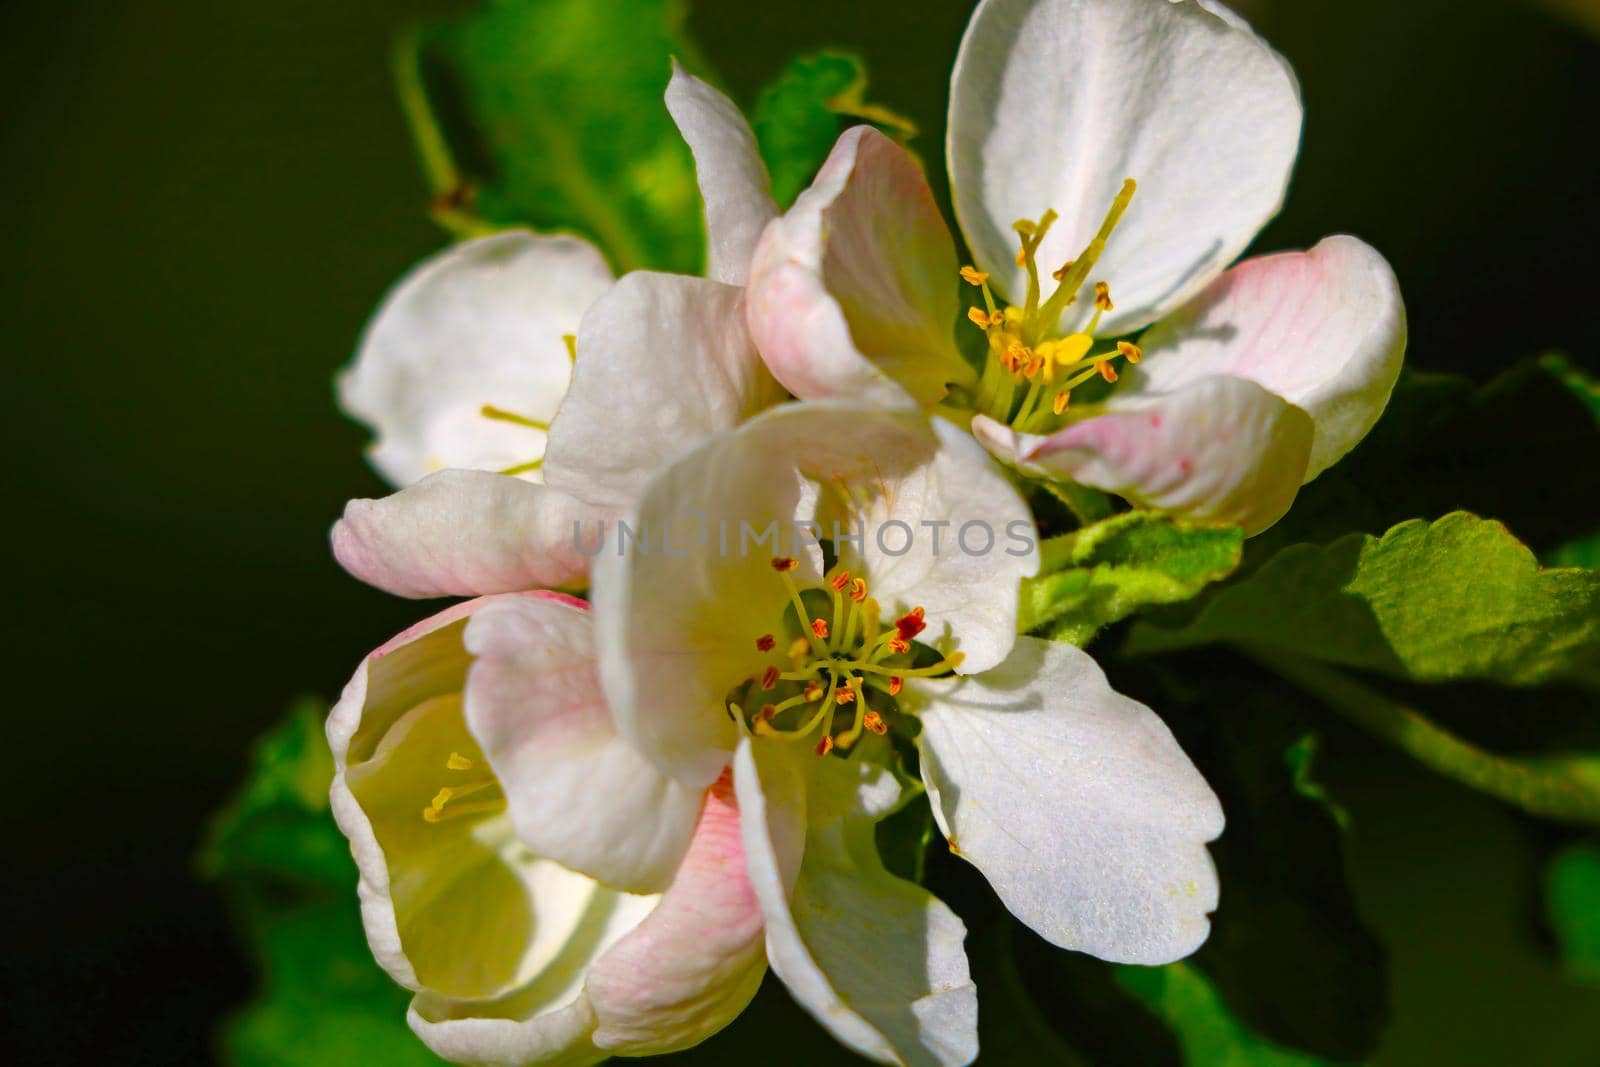 Fragrant flowering branch of apple tree in spring. by kip02kas